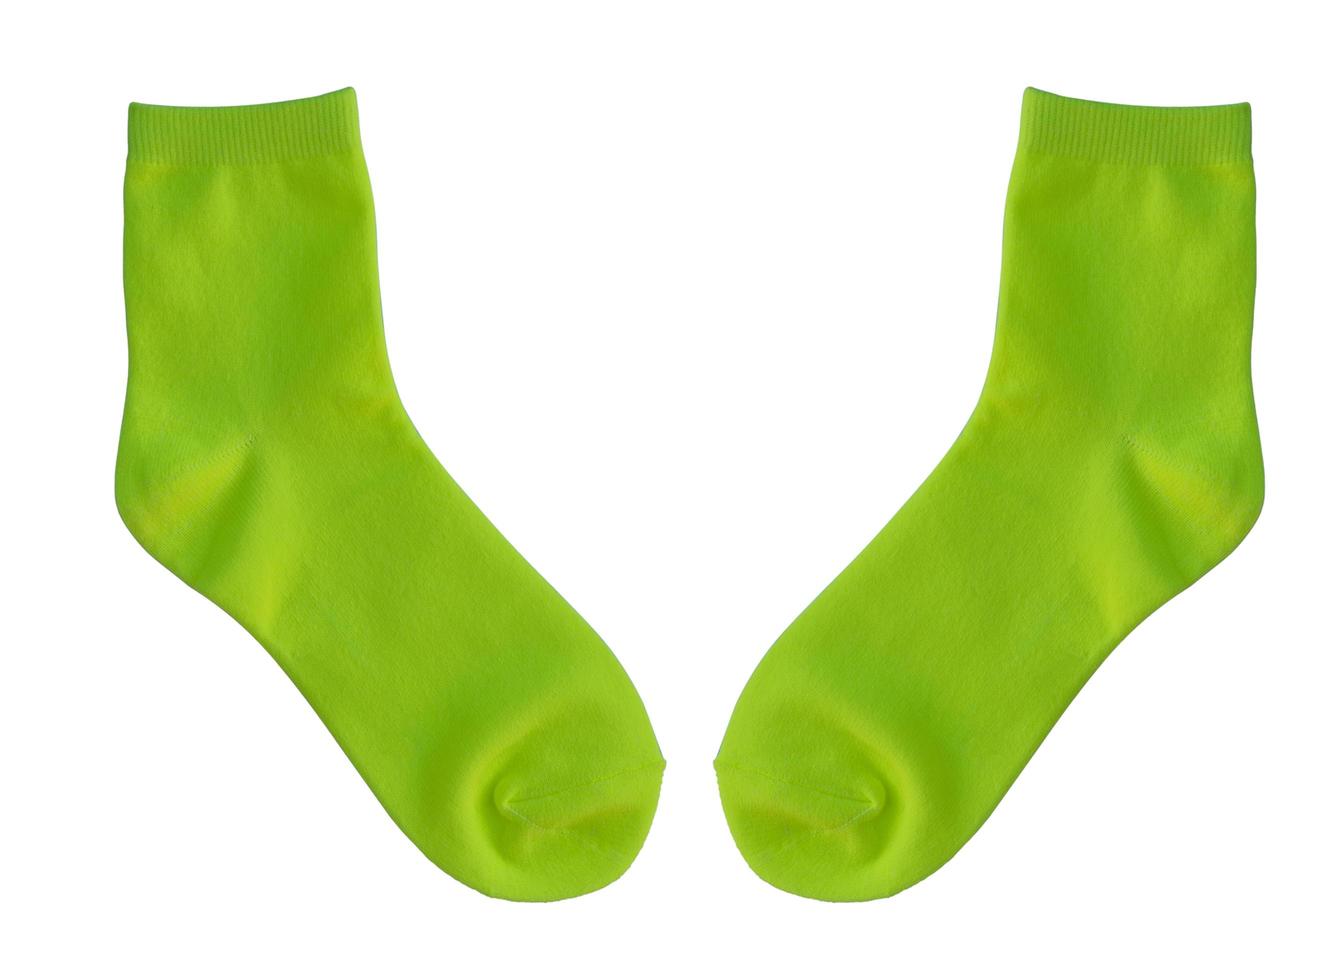 Chaussettes vertes isolé sur fond blanc photo